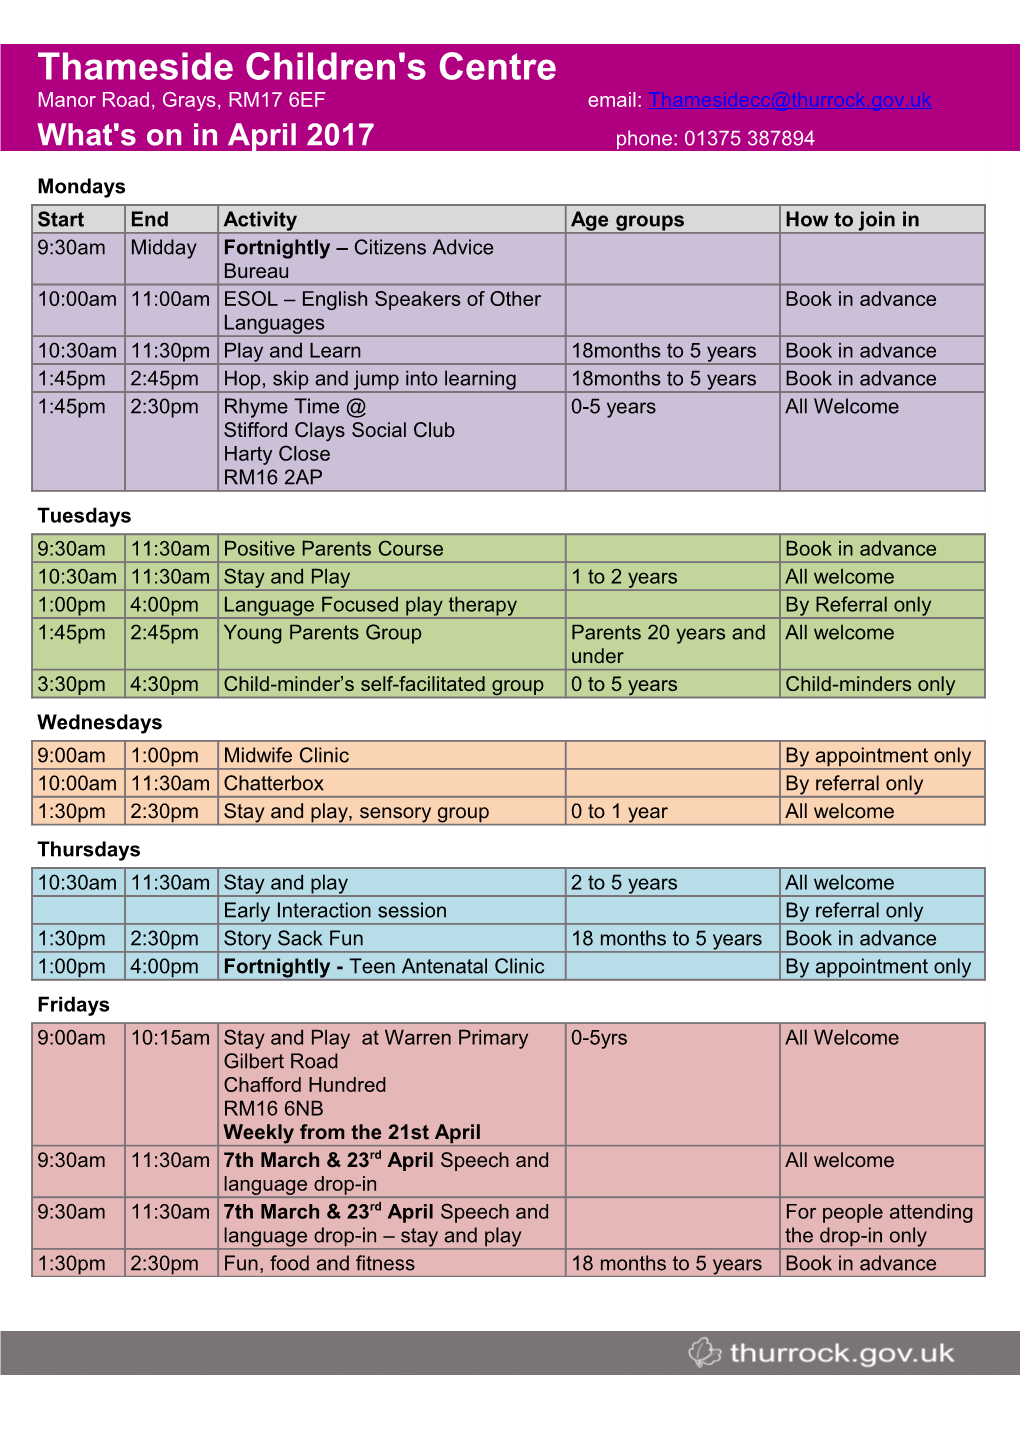 Timetable Descriptions